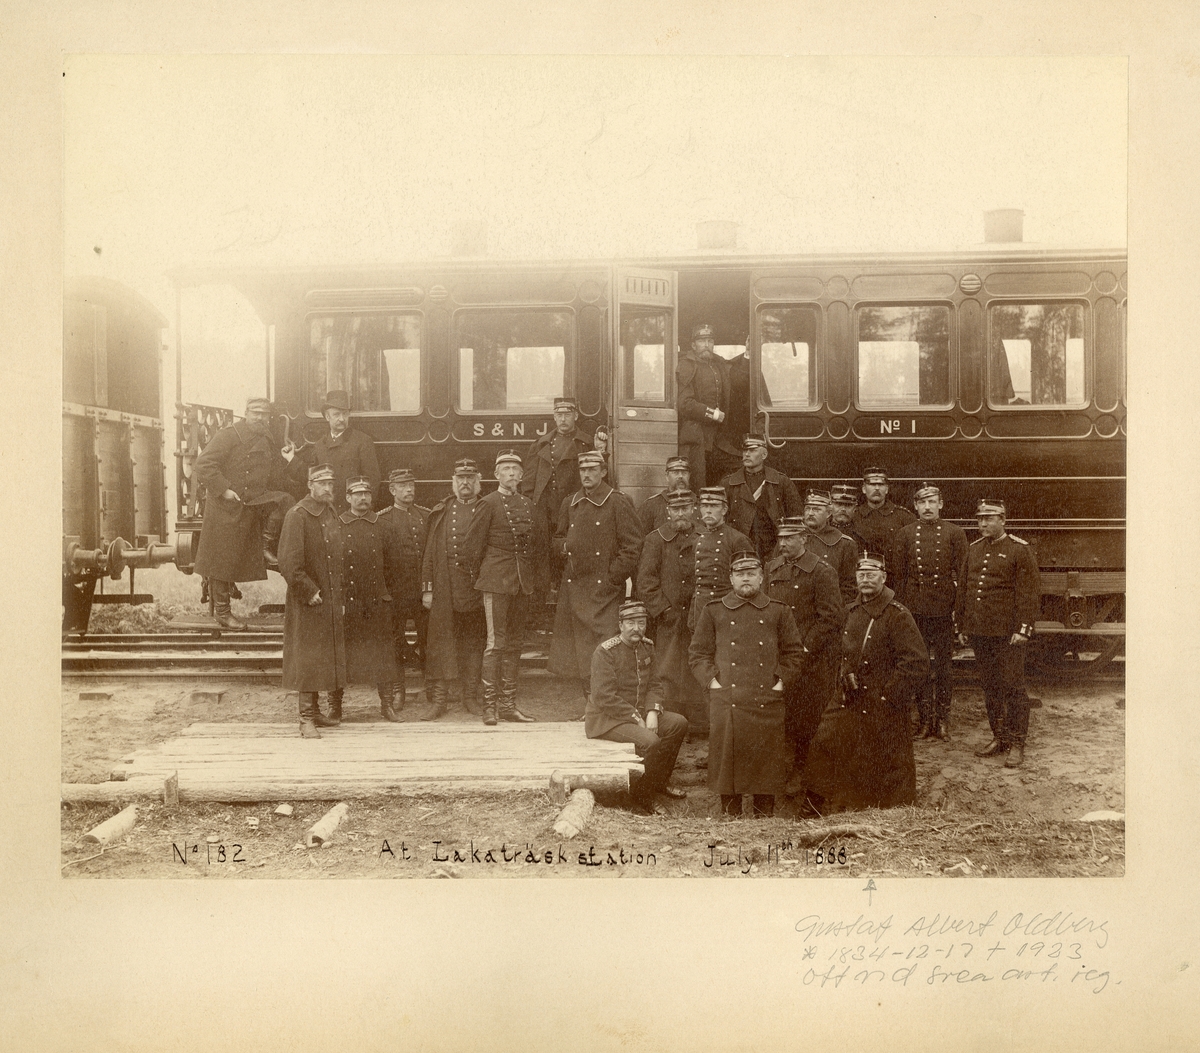 Grupporträtt av officerare vid Svea artilleriregemente A 1 utanför en järnvägsvagn vid Lakaträsk station 1888.